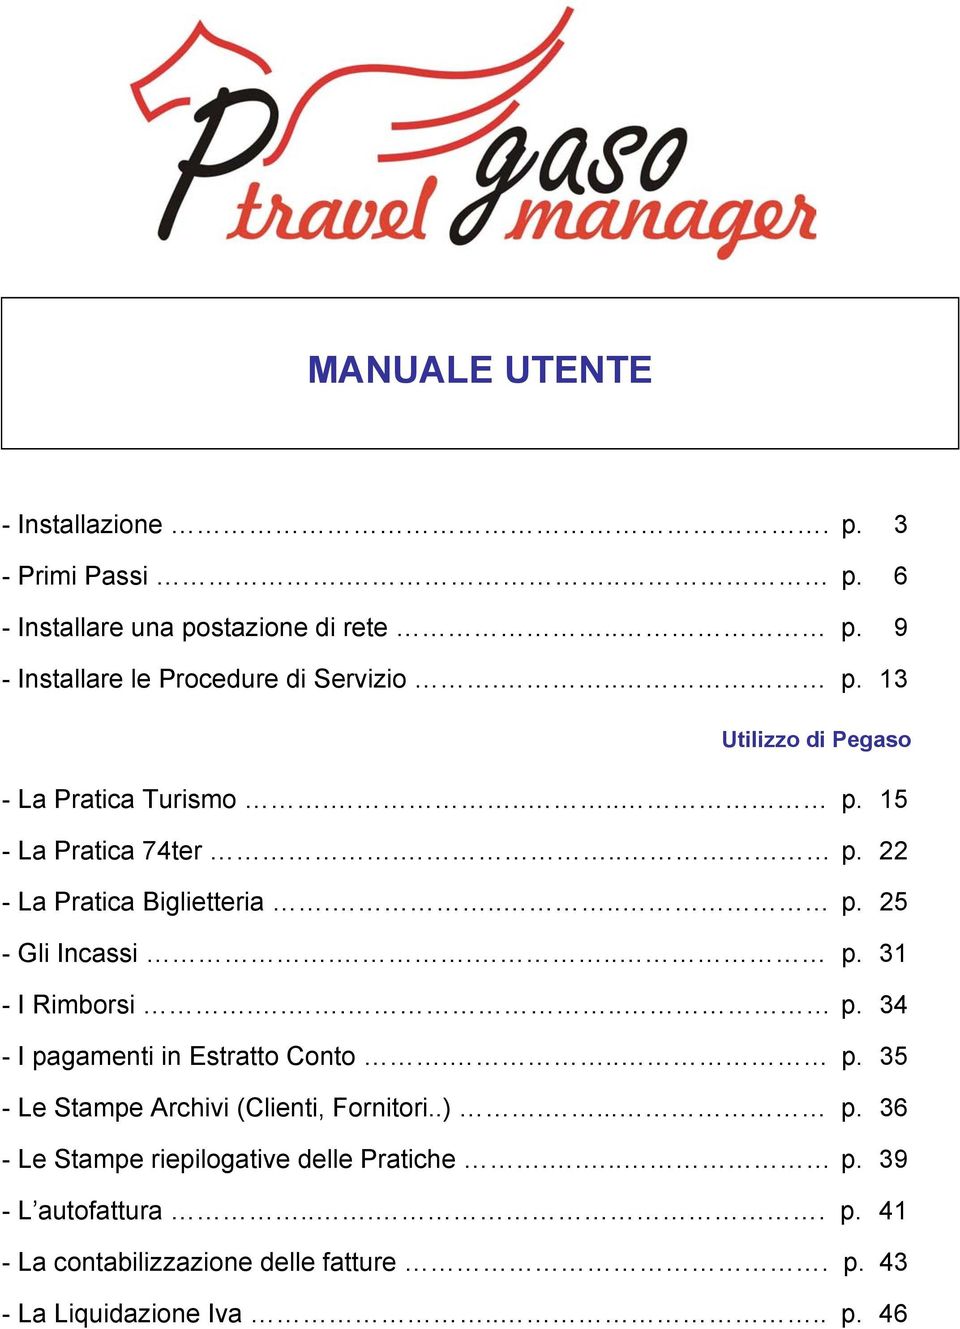 ... p. 31 - I Rimborsi..... p. 34 - I pagamenti in Estratto Conto... p. 35 - Le Stampe Archivi (Clienti, Fornitori..).... p. 36 - Le Stampe riepilogative delle Pratiche.